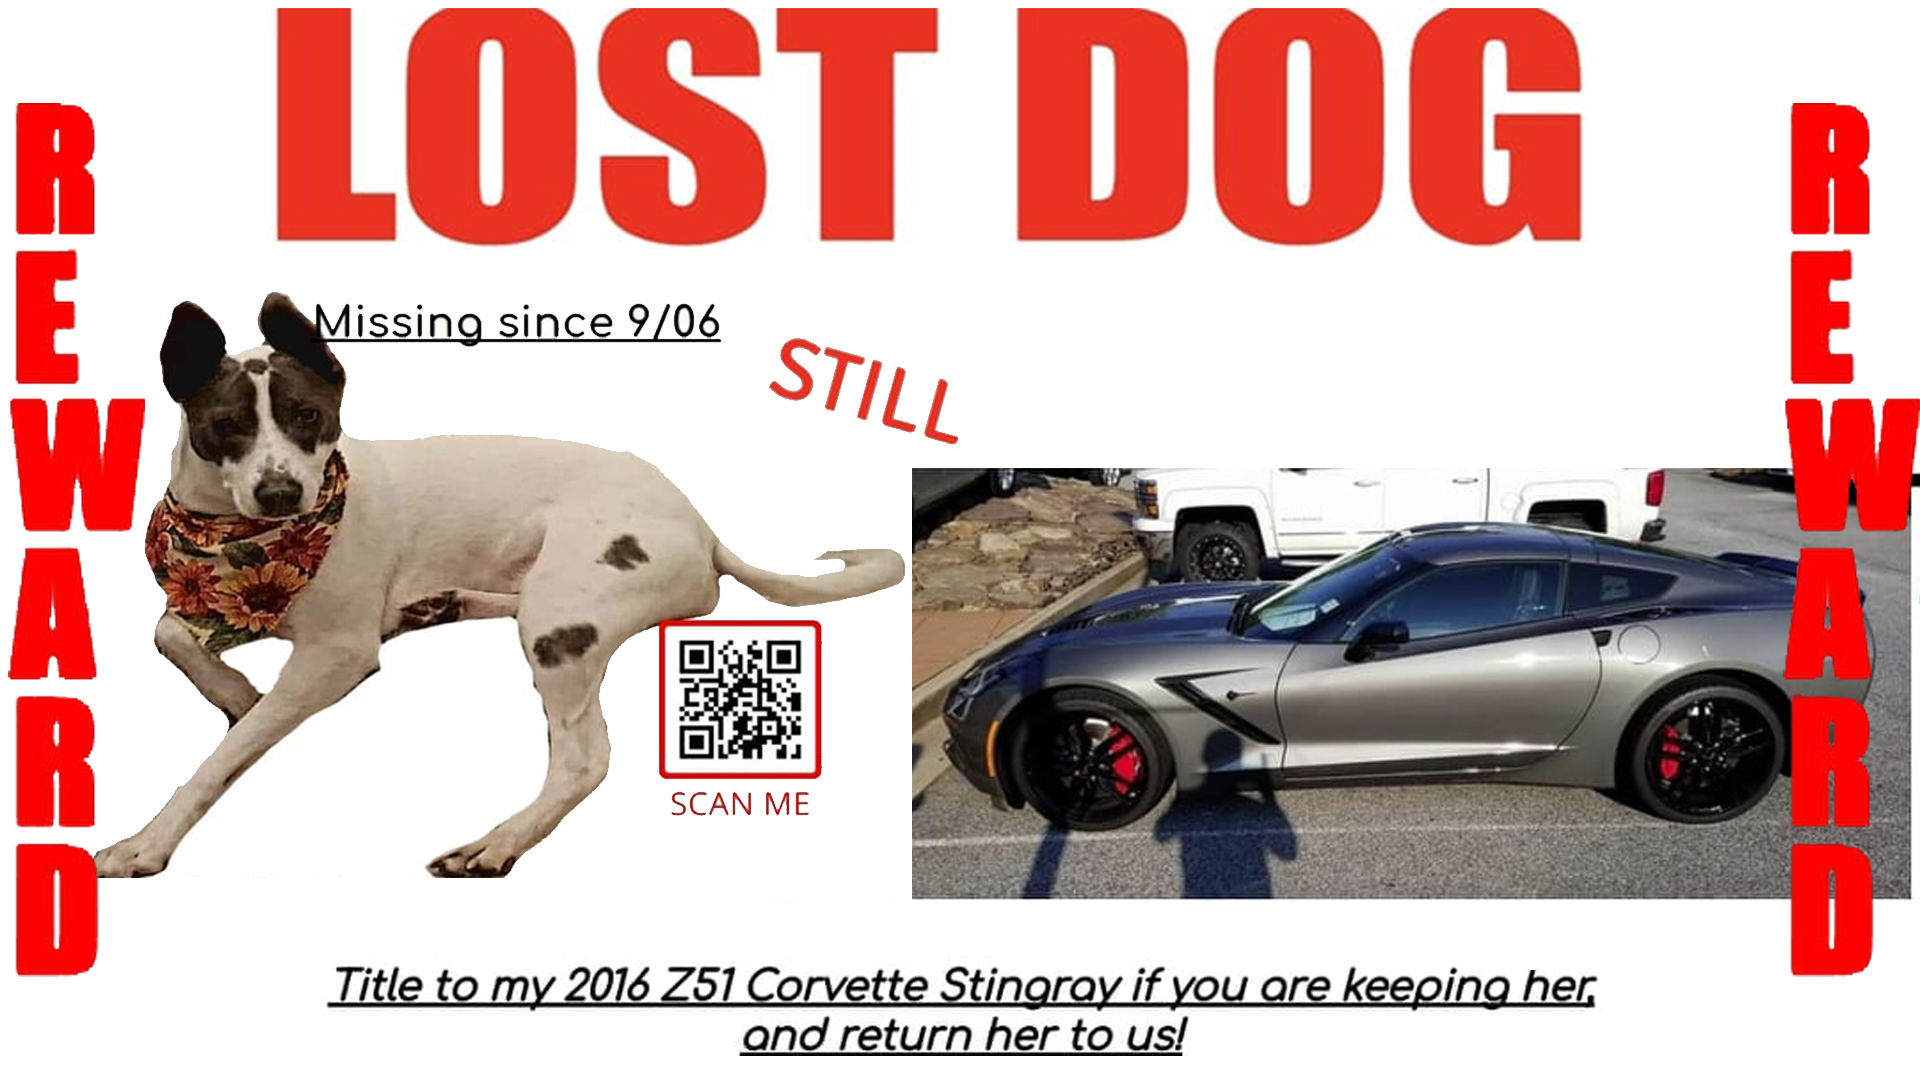 Casal oferece Corvette Stingray Z51 para quem entregar cachorro que fugiu